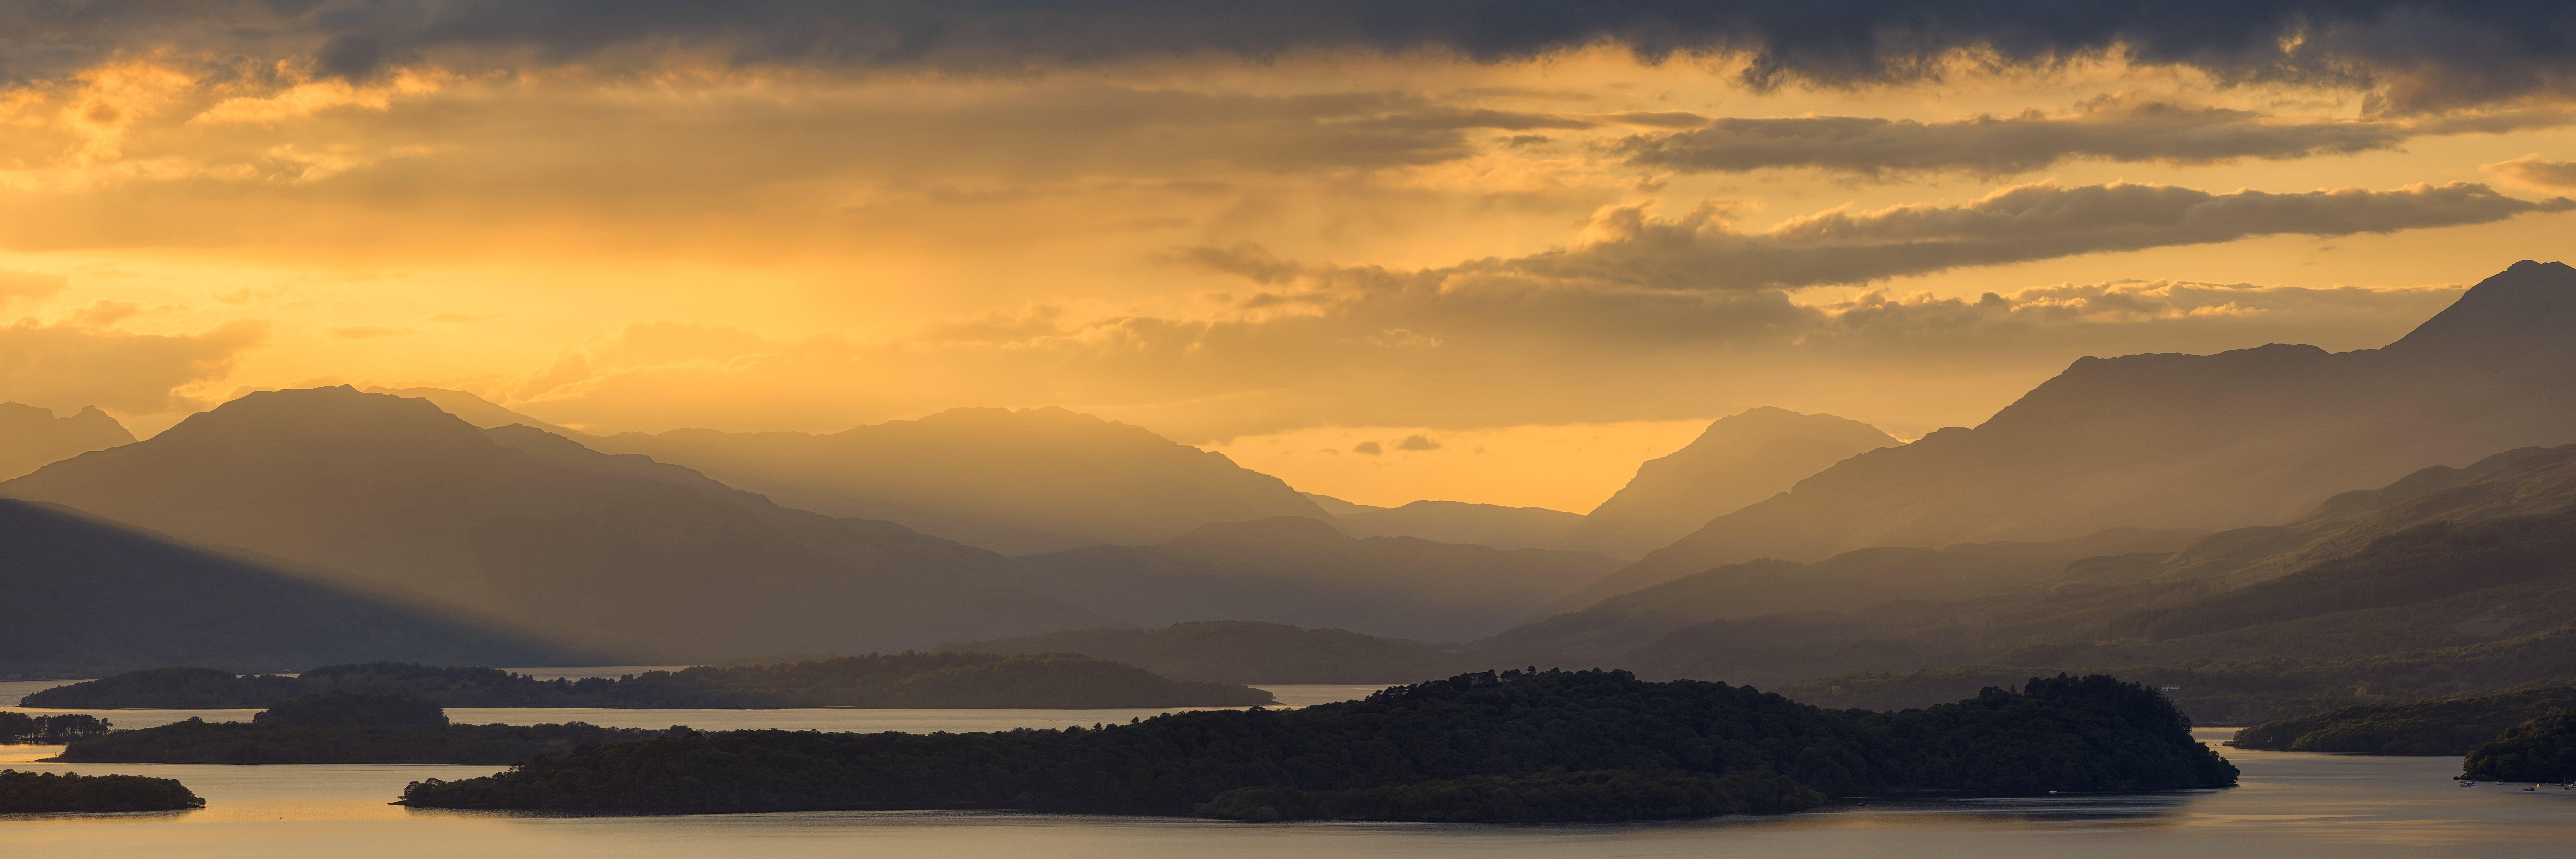 Sunset in Loch Lomond, Scotland [10800x3600]